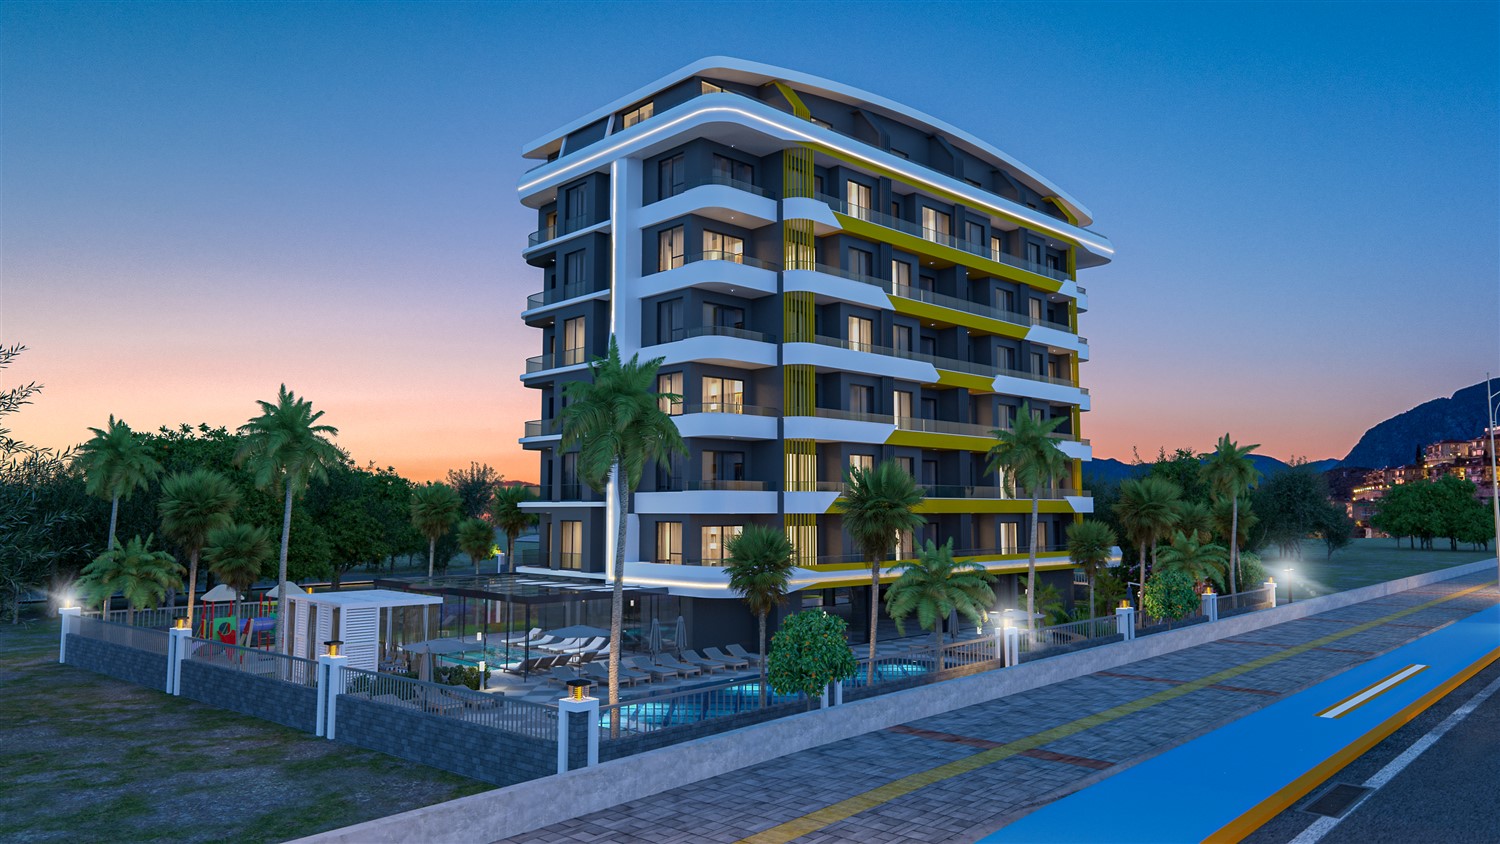 Новый жилой комплекс c захватывающими дух пейзажами морского побережья, расположенный в курортном городе Газипаша